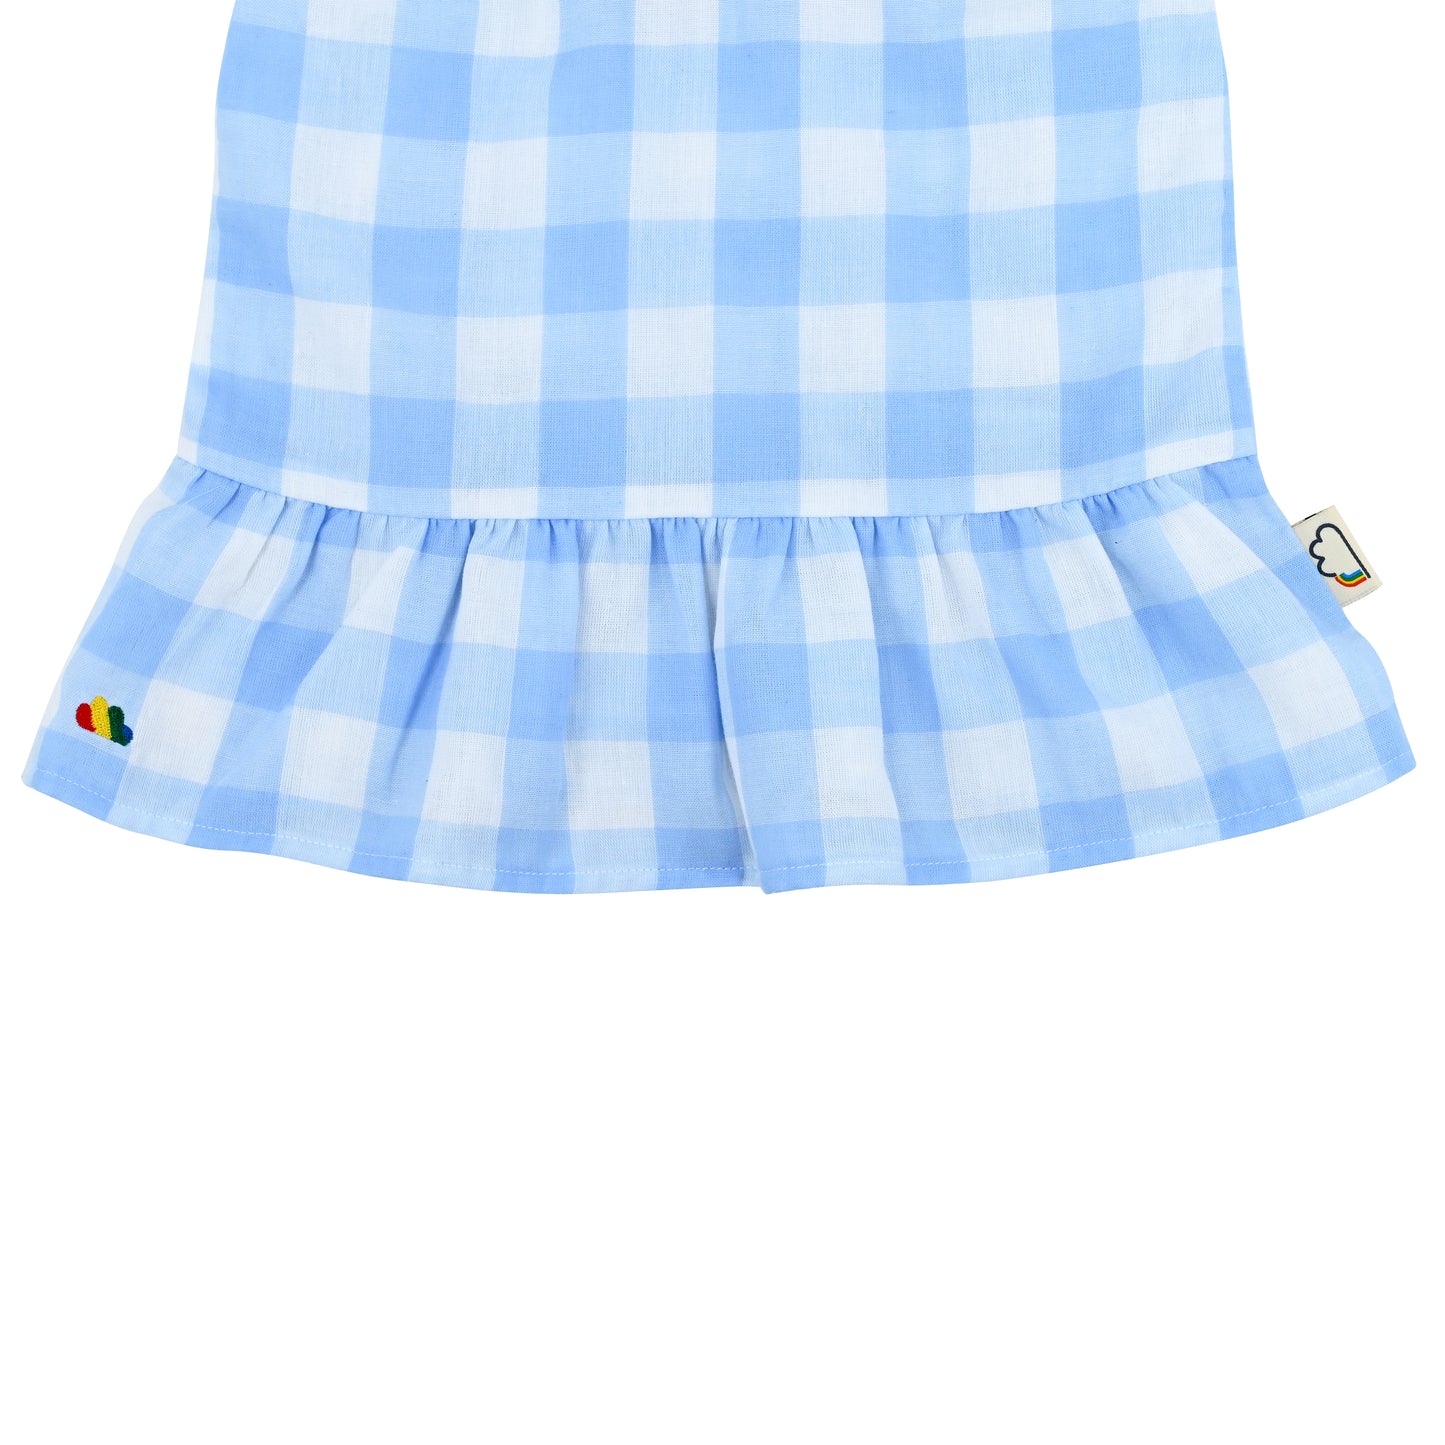 嬰兒服裝 -  藍色大方格格紋印花彩虹刺繡吊帶背心